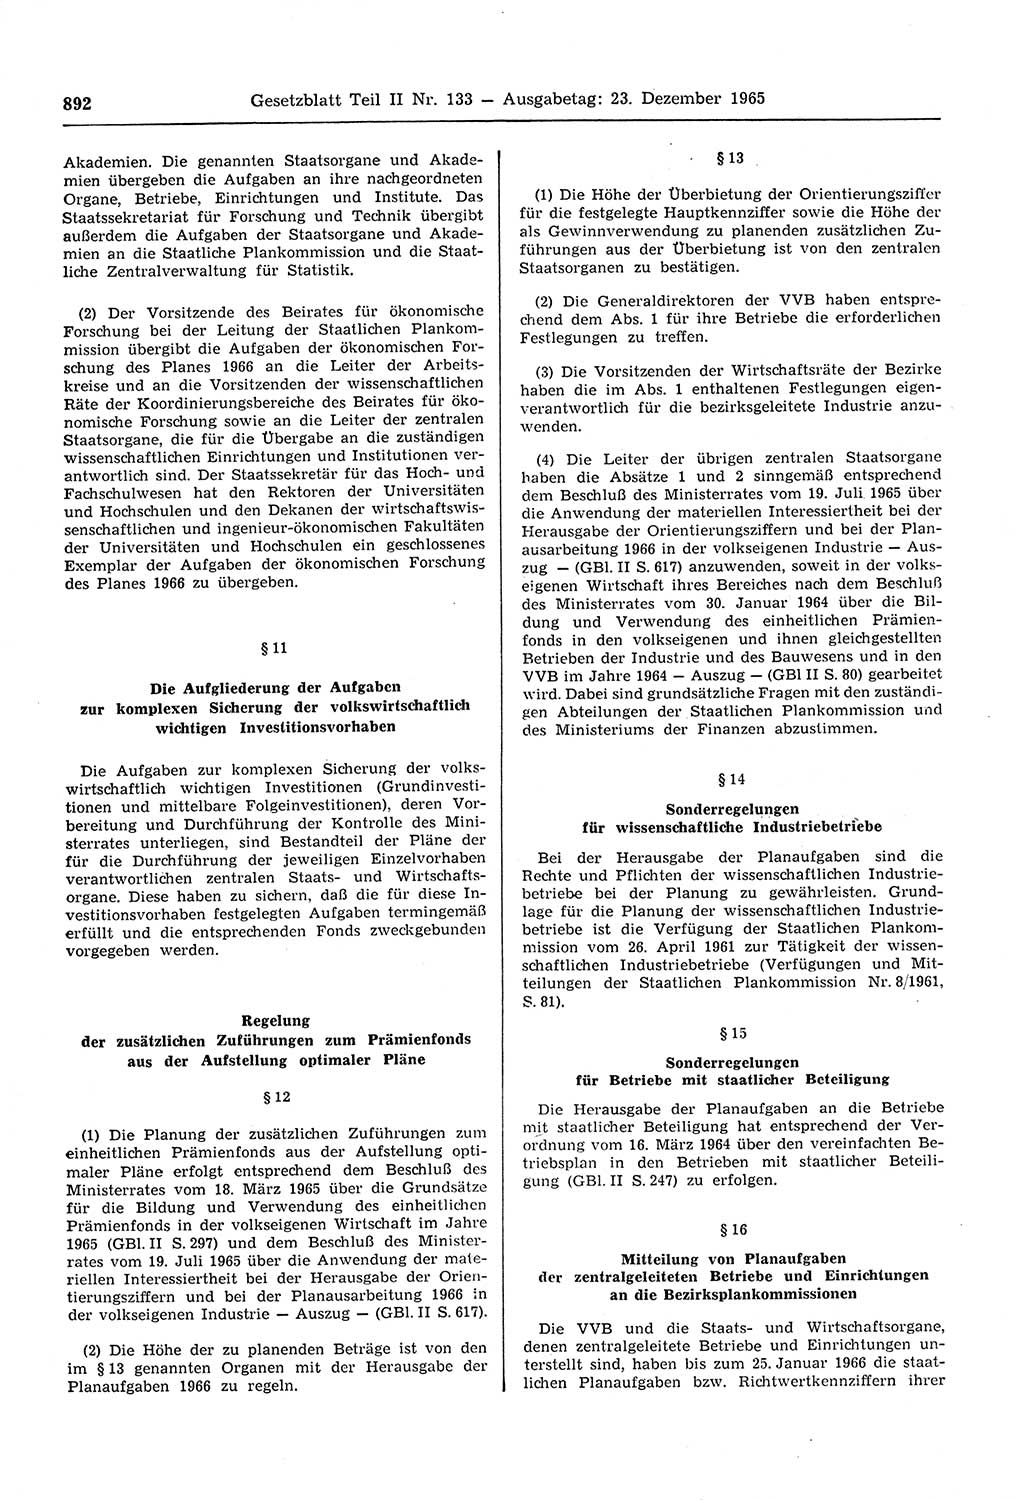 Gesetzblatt (GBl.) der Deutschen Demokratischen Republik (DDR) Teil ⅠⅠ 1965, Seite 892 (GBl. DDR ⅠⅠ 1965, S. 892)